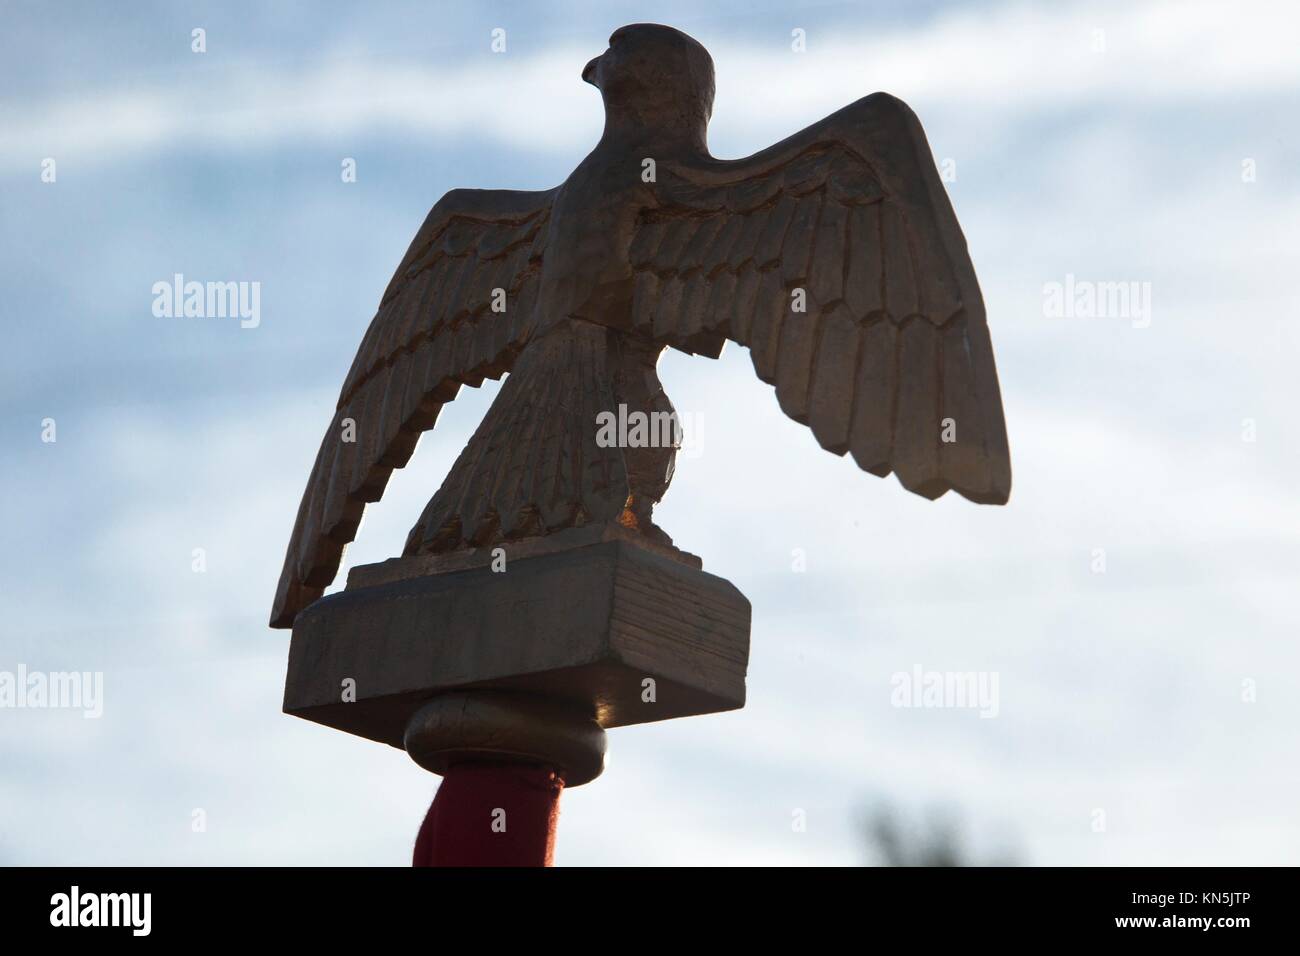 Adler Emblem von französischen Napoleonischen Truppen im La Albuera Kampf Reenactment durchgeführt. Stockfoto